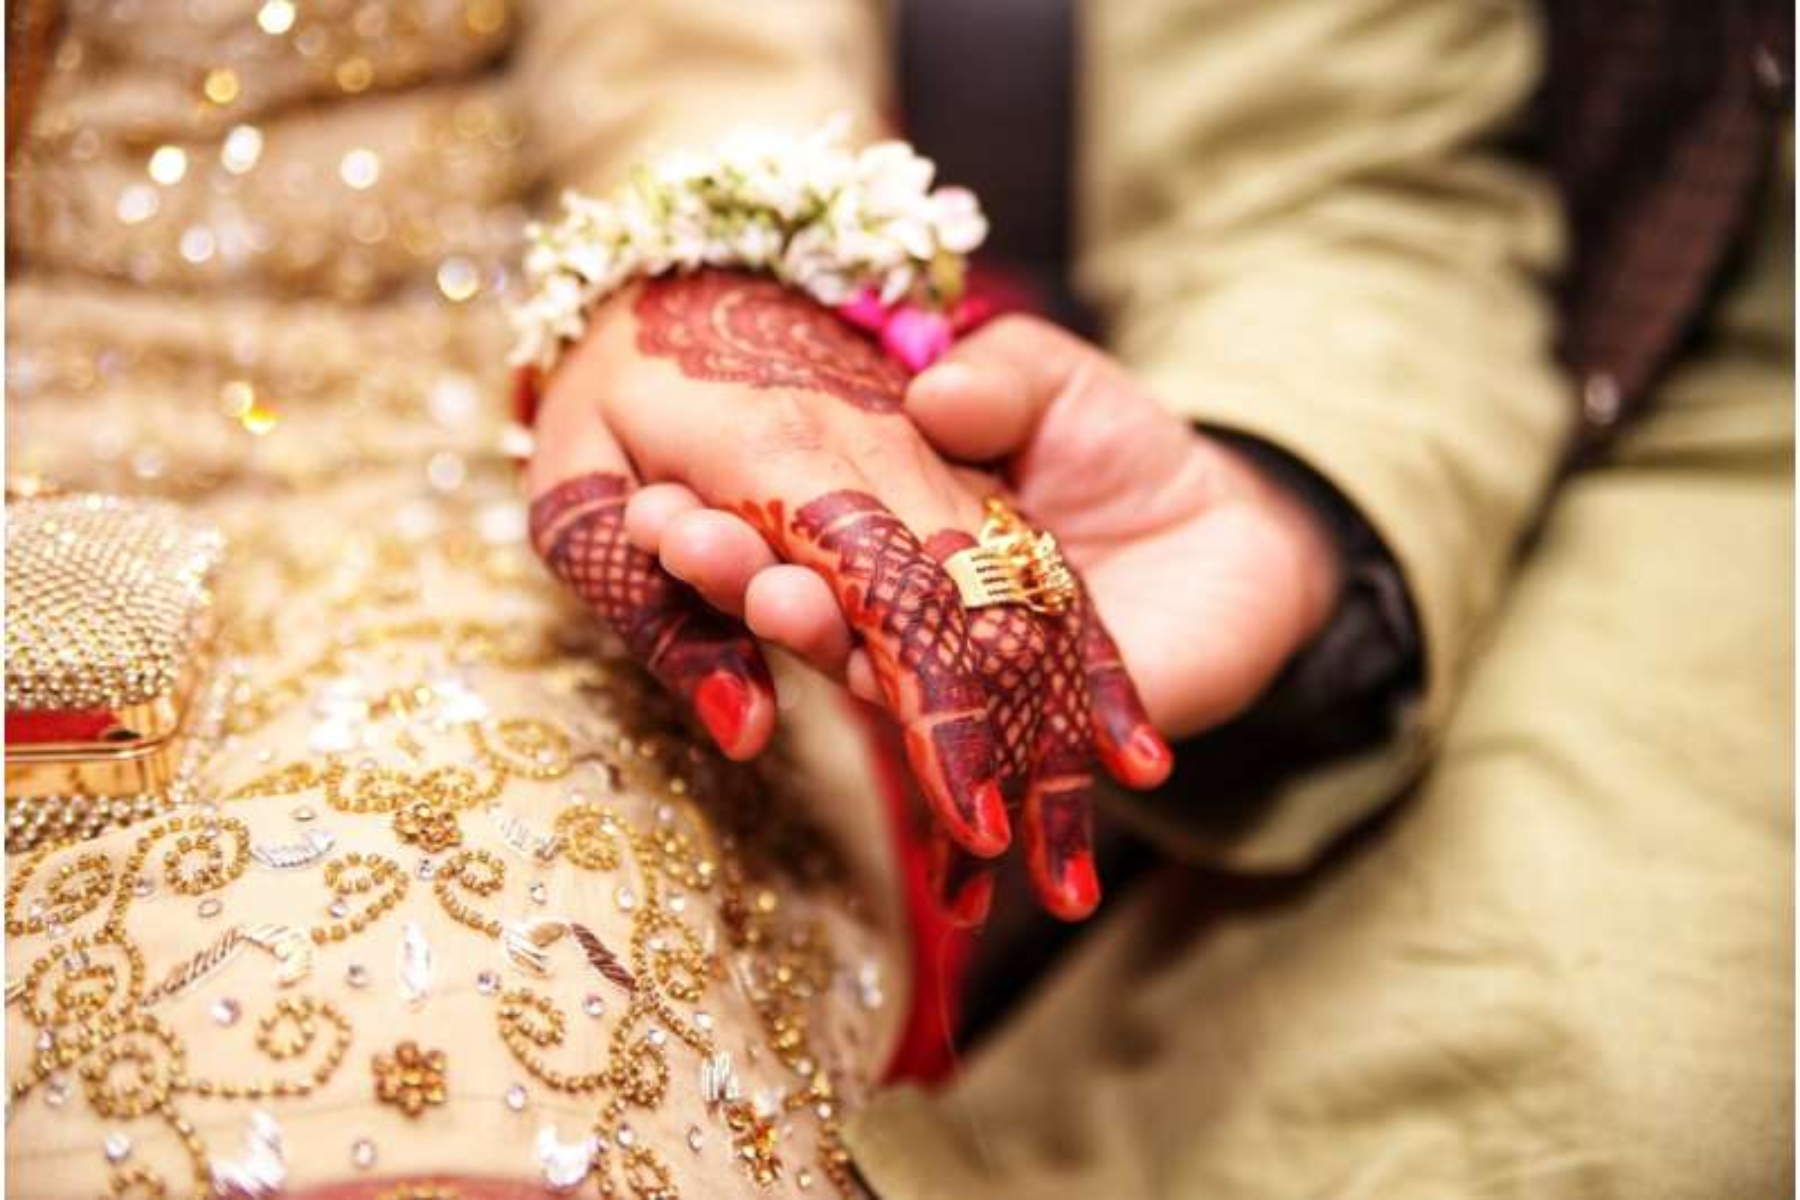 Ινδία: Η πρόοδος προς την εξάλειψη των γάμων παιδιών έχει σταματήσει